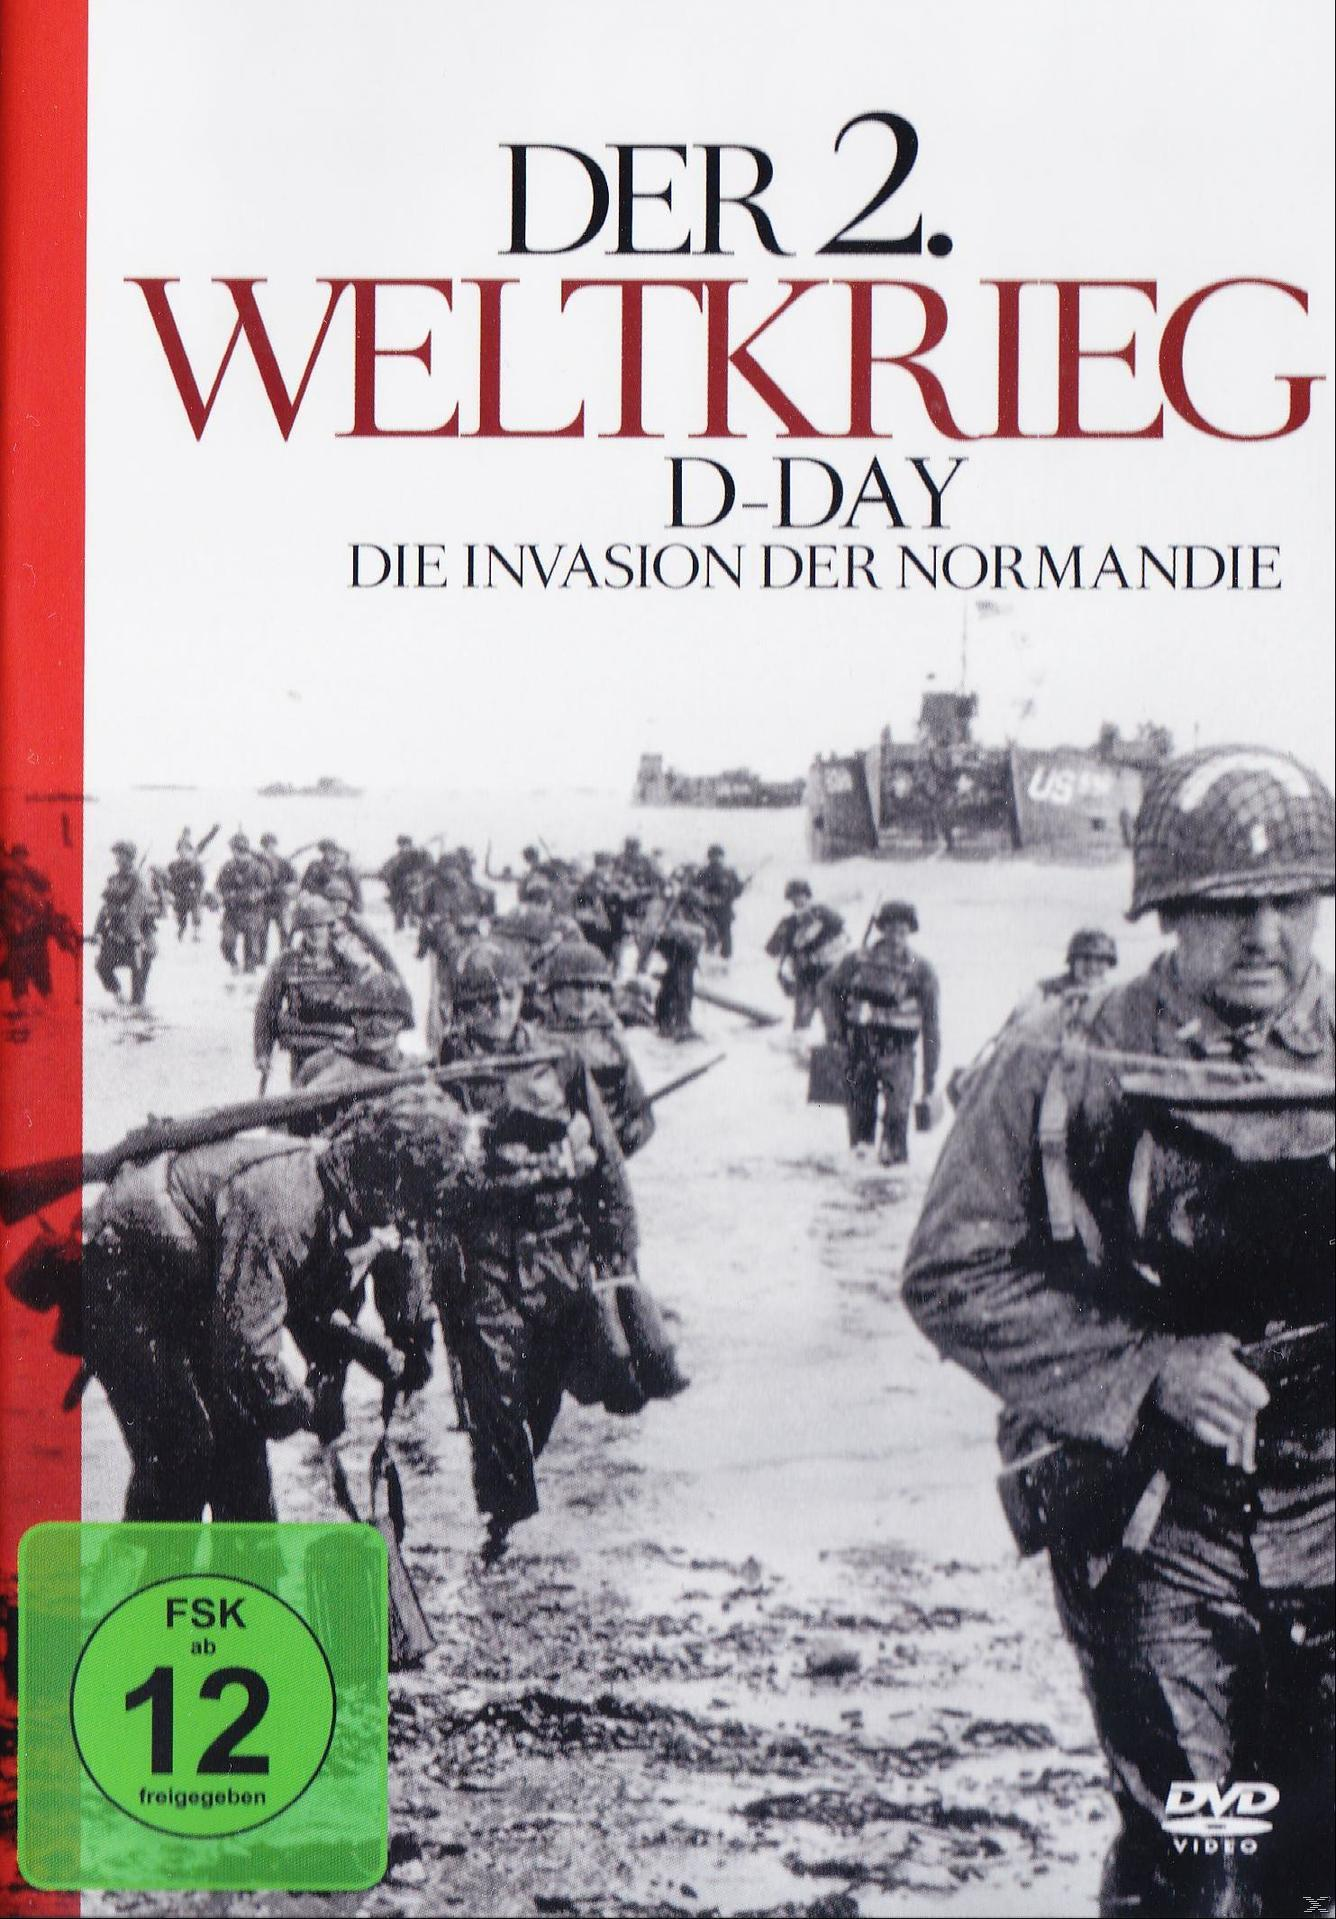 DVD Der Invasion der 2.Weltkrieg-d-Day-die Normandie